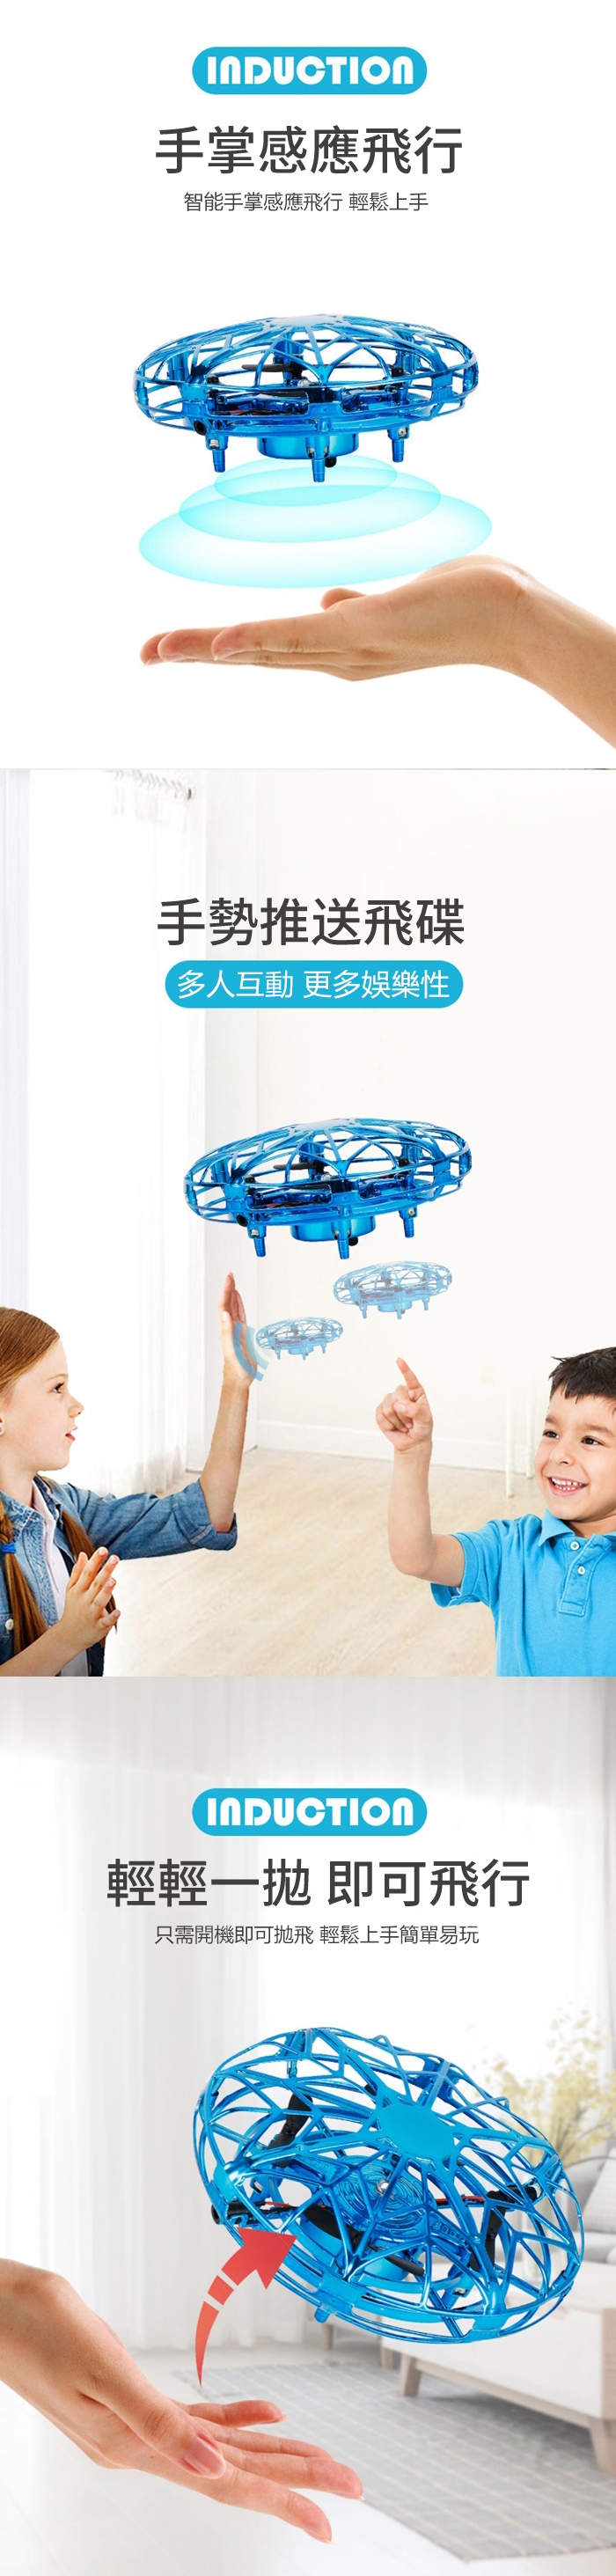 UFO飛行器 無人機 智能感應紅外線飛碟玩具